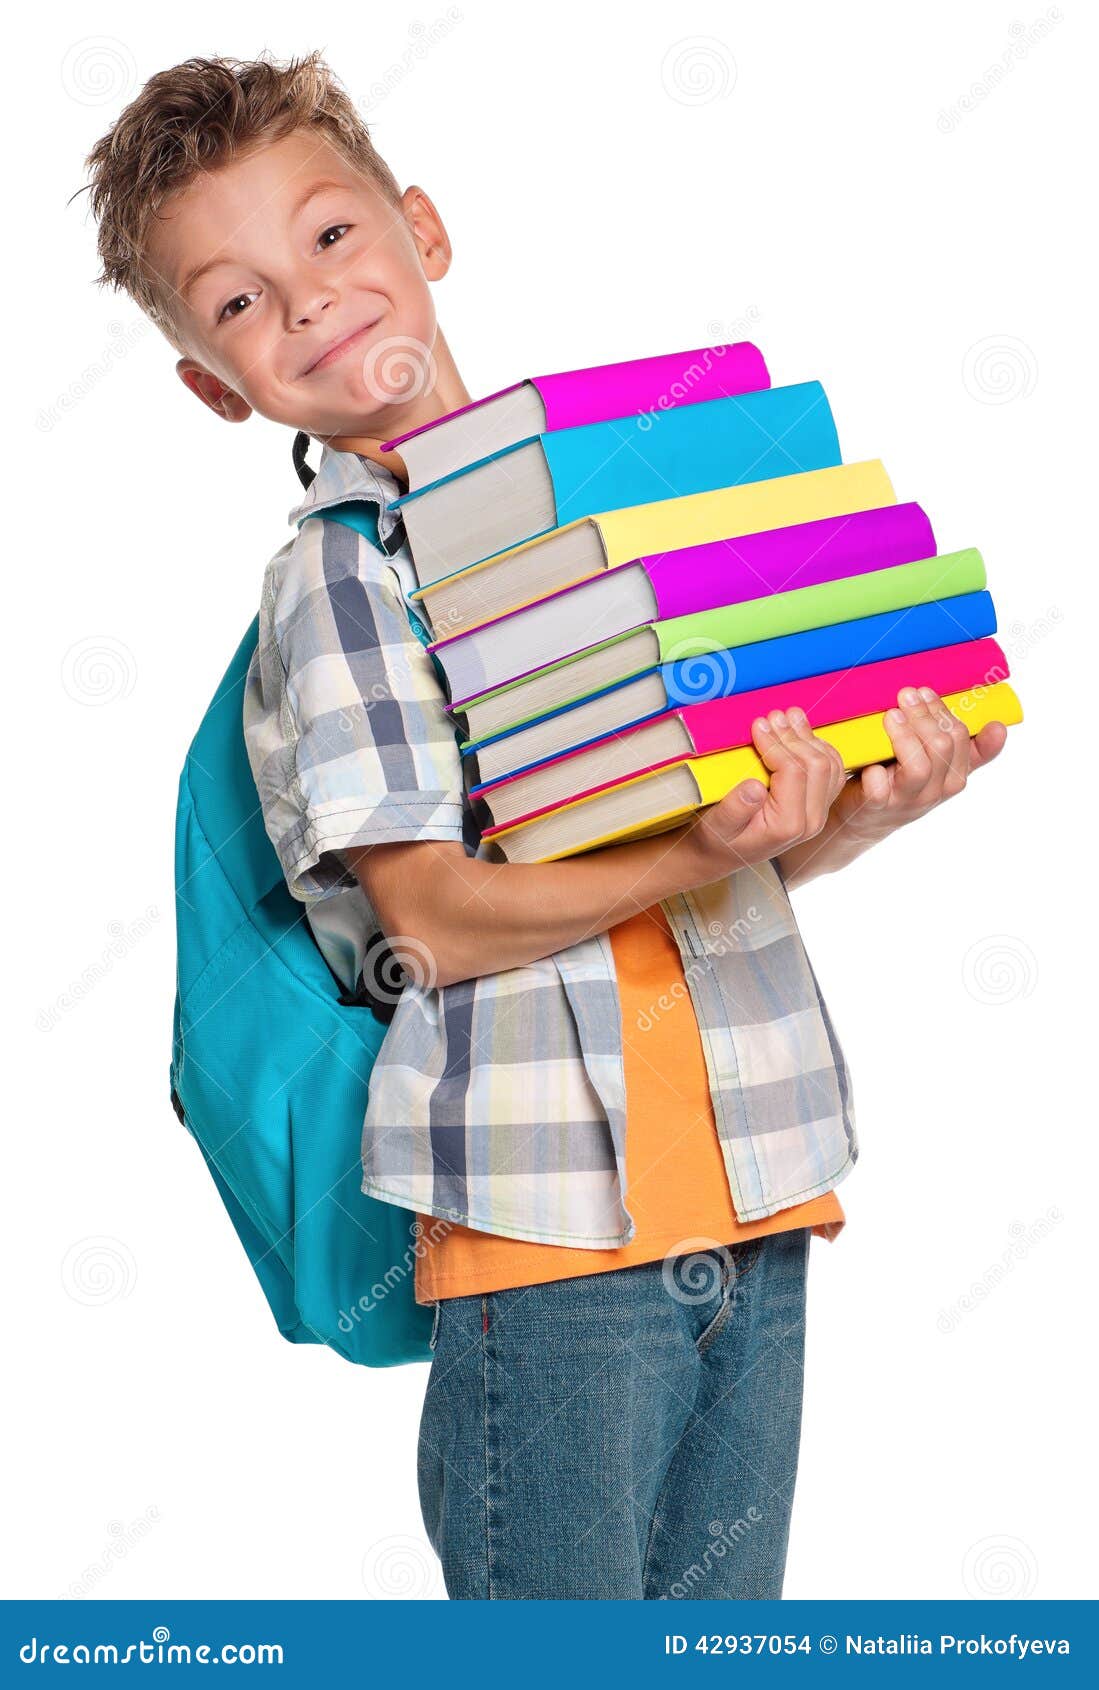 Читая учебники ребята готовились. Книга для мальчиков. Мальчик с рюкзаком и книгами. Школьник с учебником. Ребенок несет книги фотосессия.